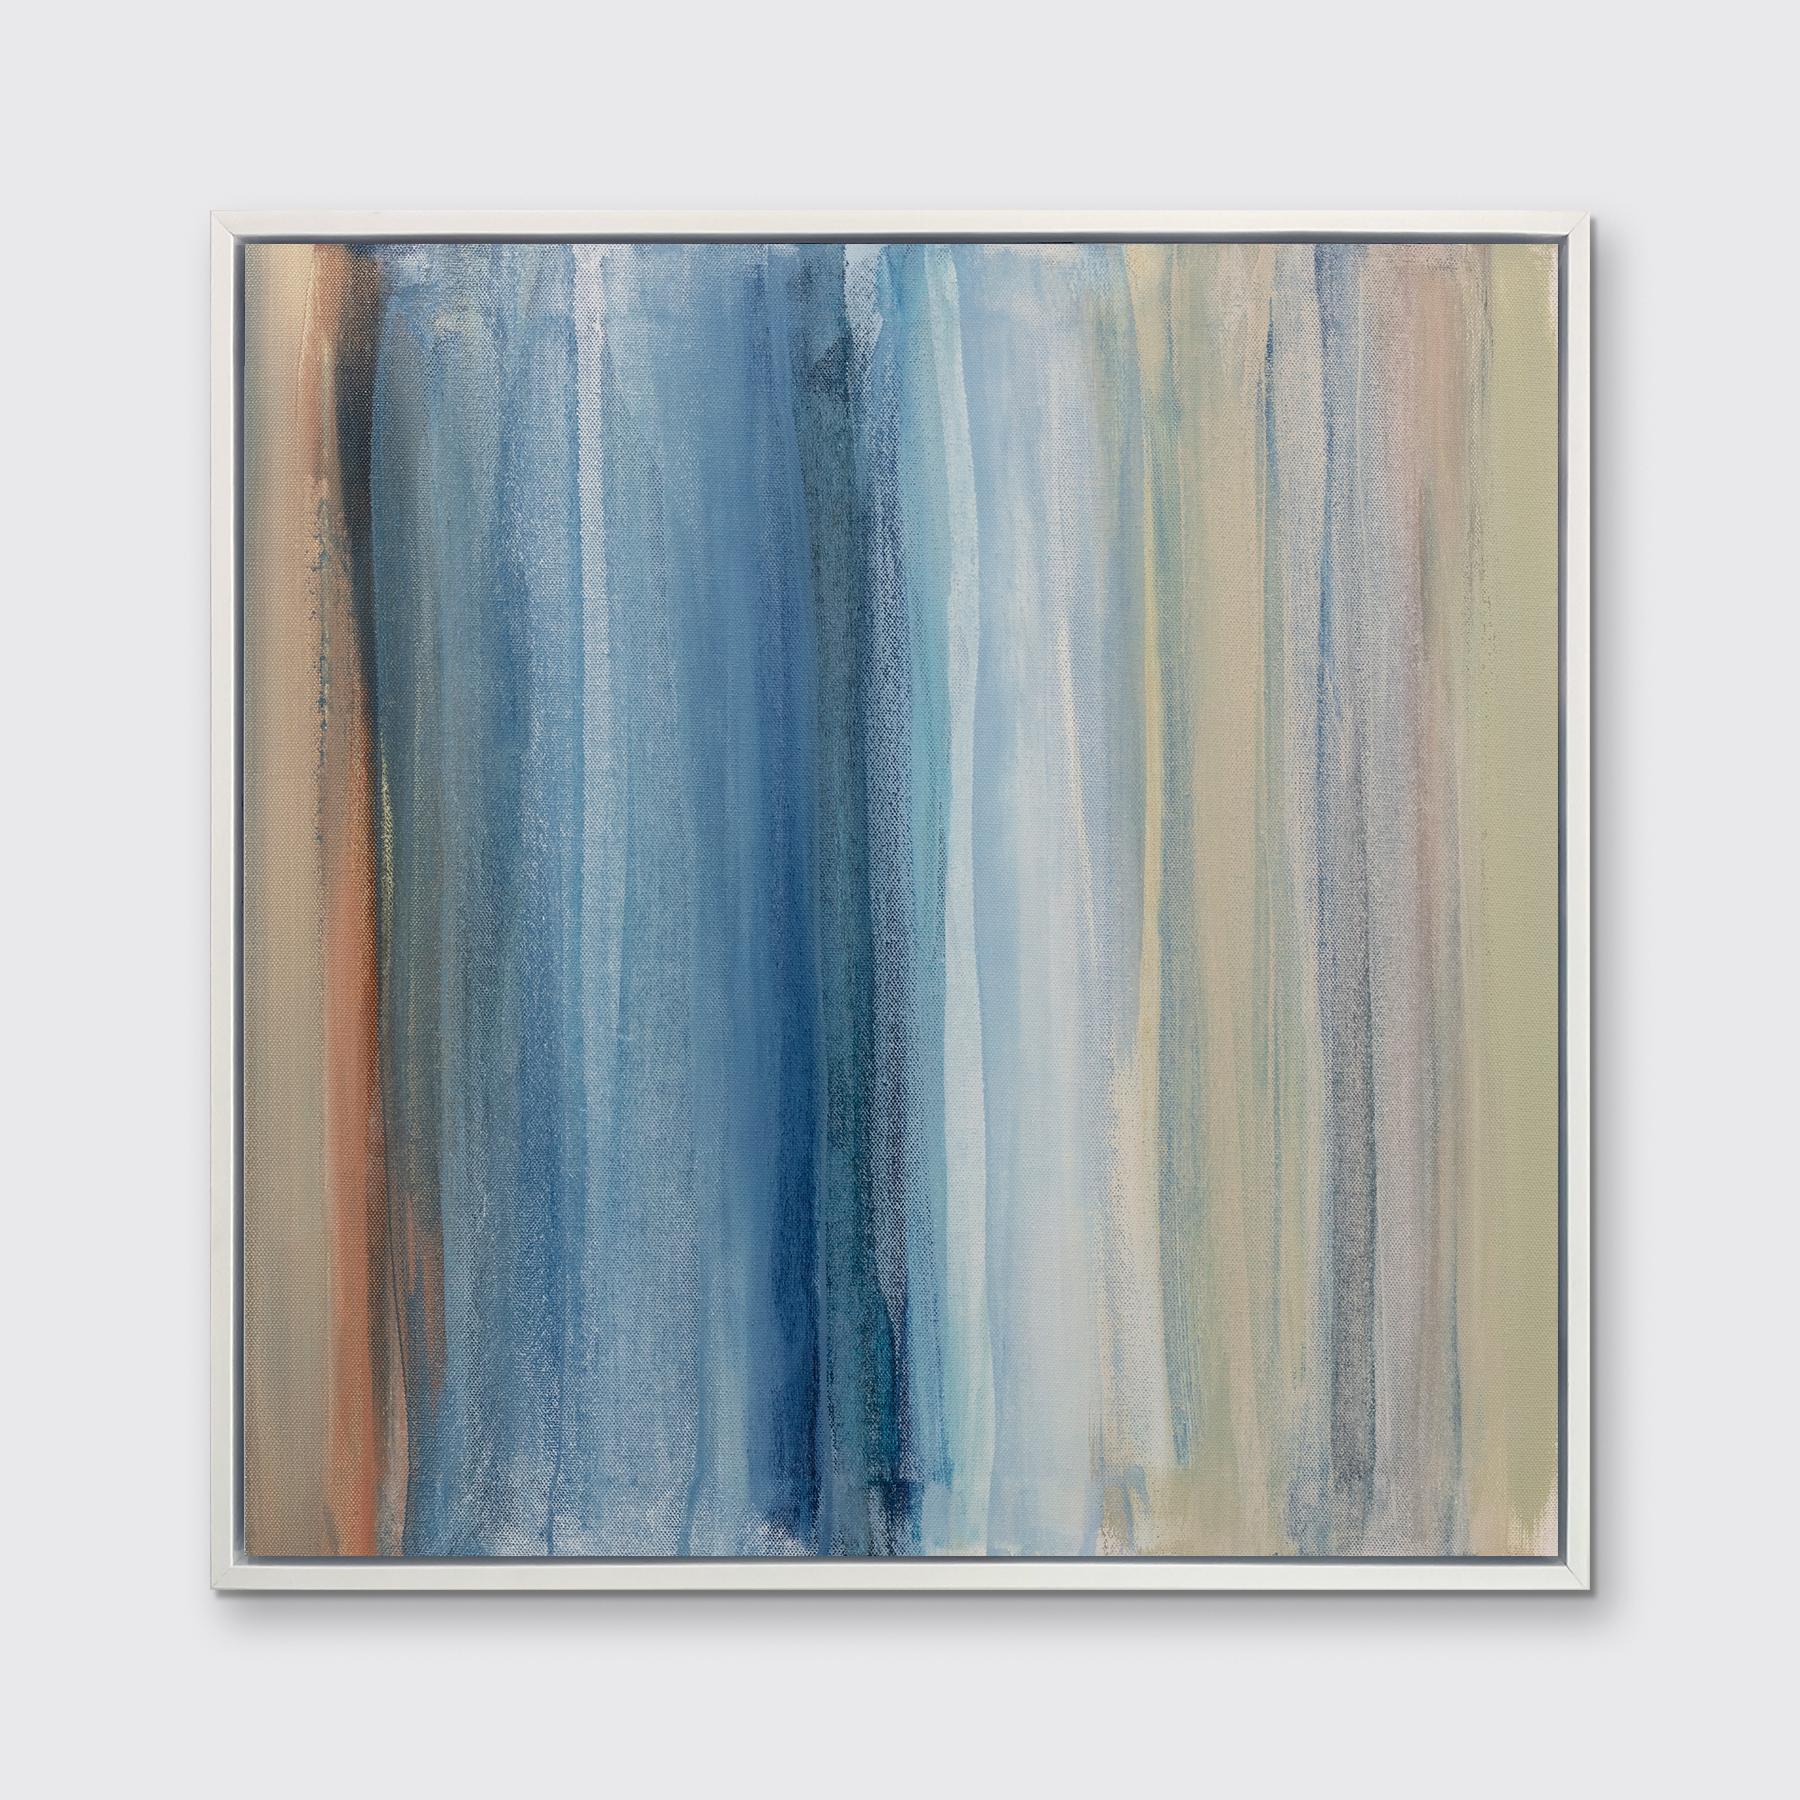 Dieser zeitgenössische Druck in limitierter Auflage von Teodora Guererra zeigt kühle Blau- und Weißtöne mit einer abstrakten Küstenästhetik. Dieser Druck passt hervorragend zu Indigo Tide II - einem Druck in limitierter Auflage desselben Künstlers.